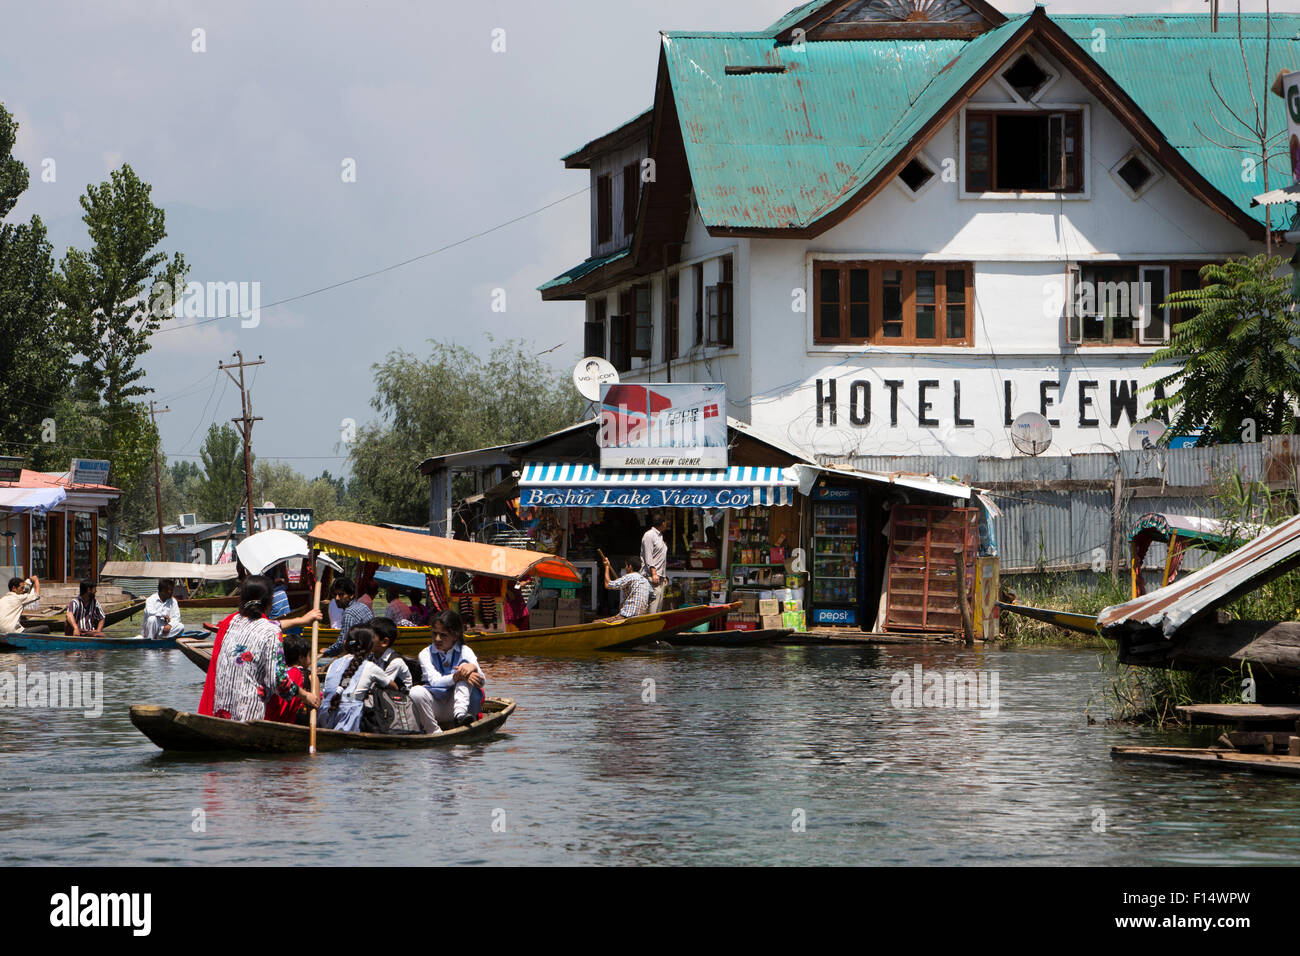 India, Jammu & Kashmir, Srinagar, Dal Lago, el hotel cuenta con conexión a sotavento VS Naipaul, ahora el puesto de policía Foto de stock